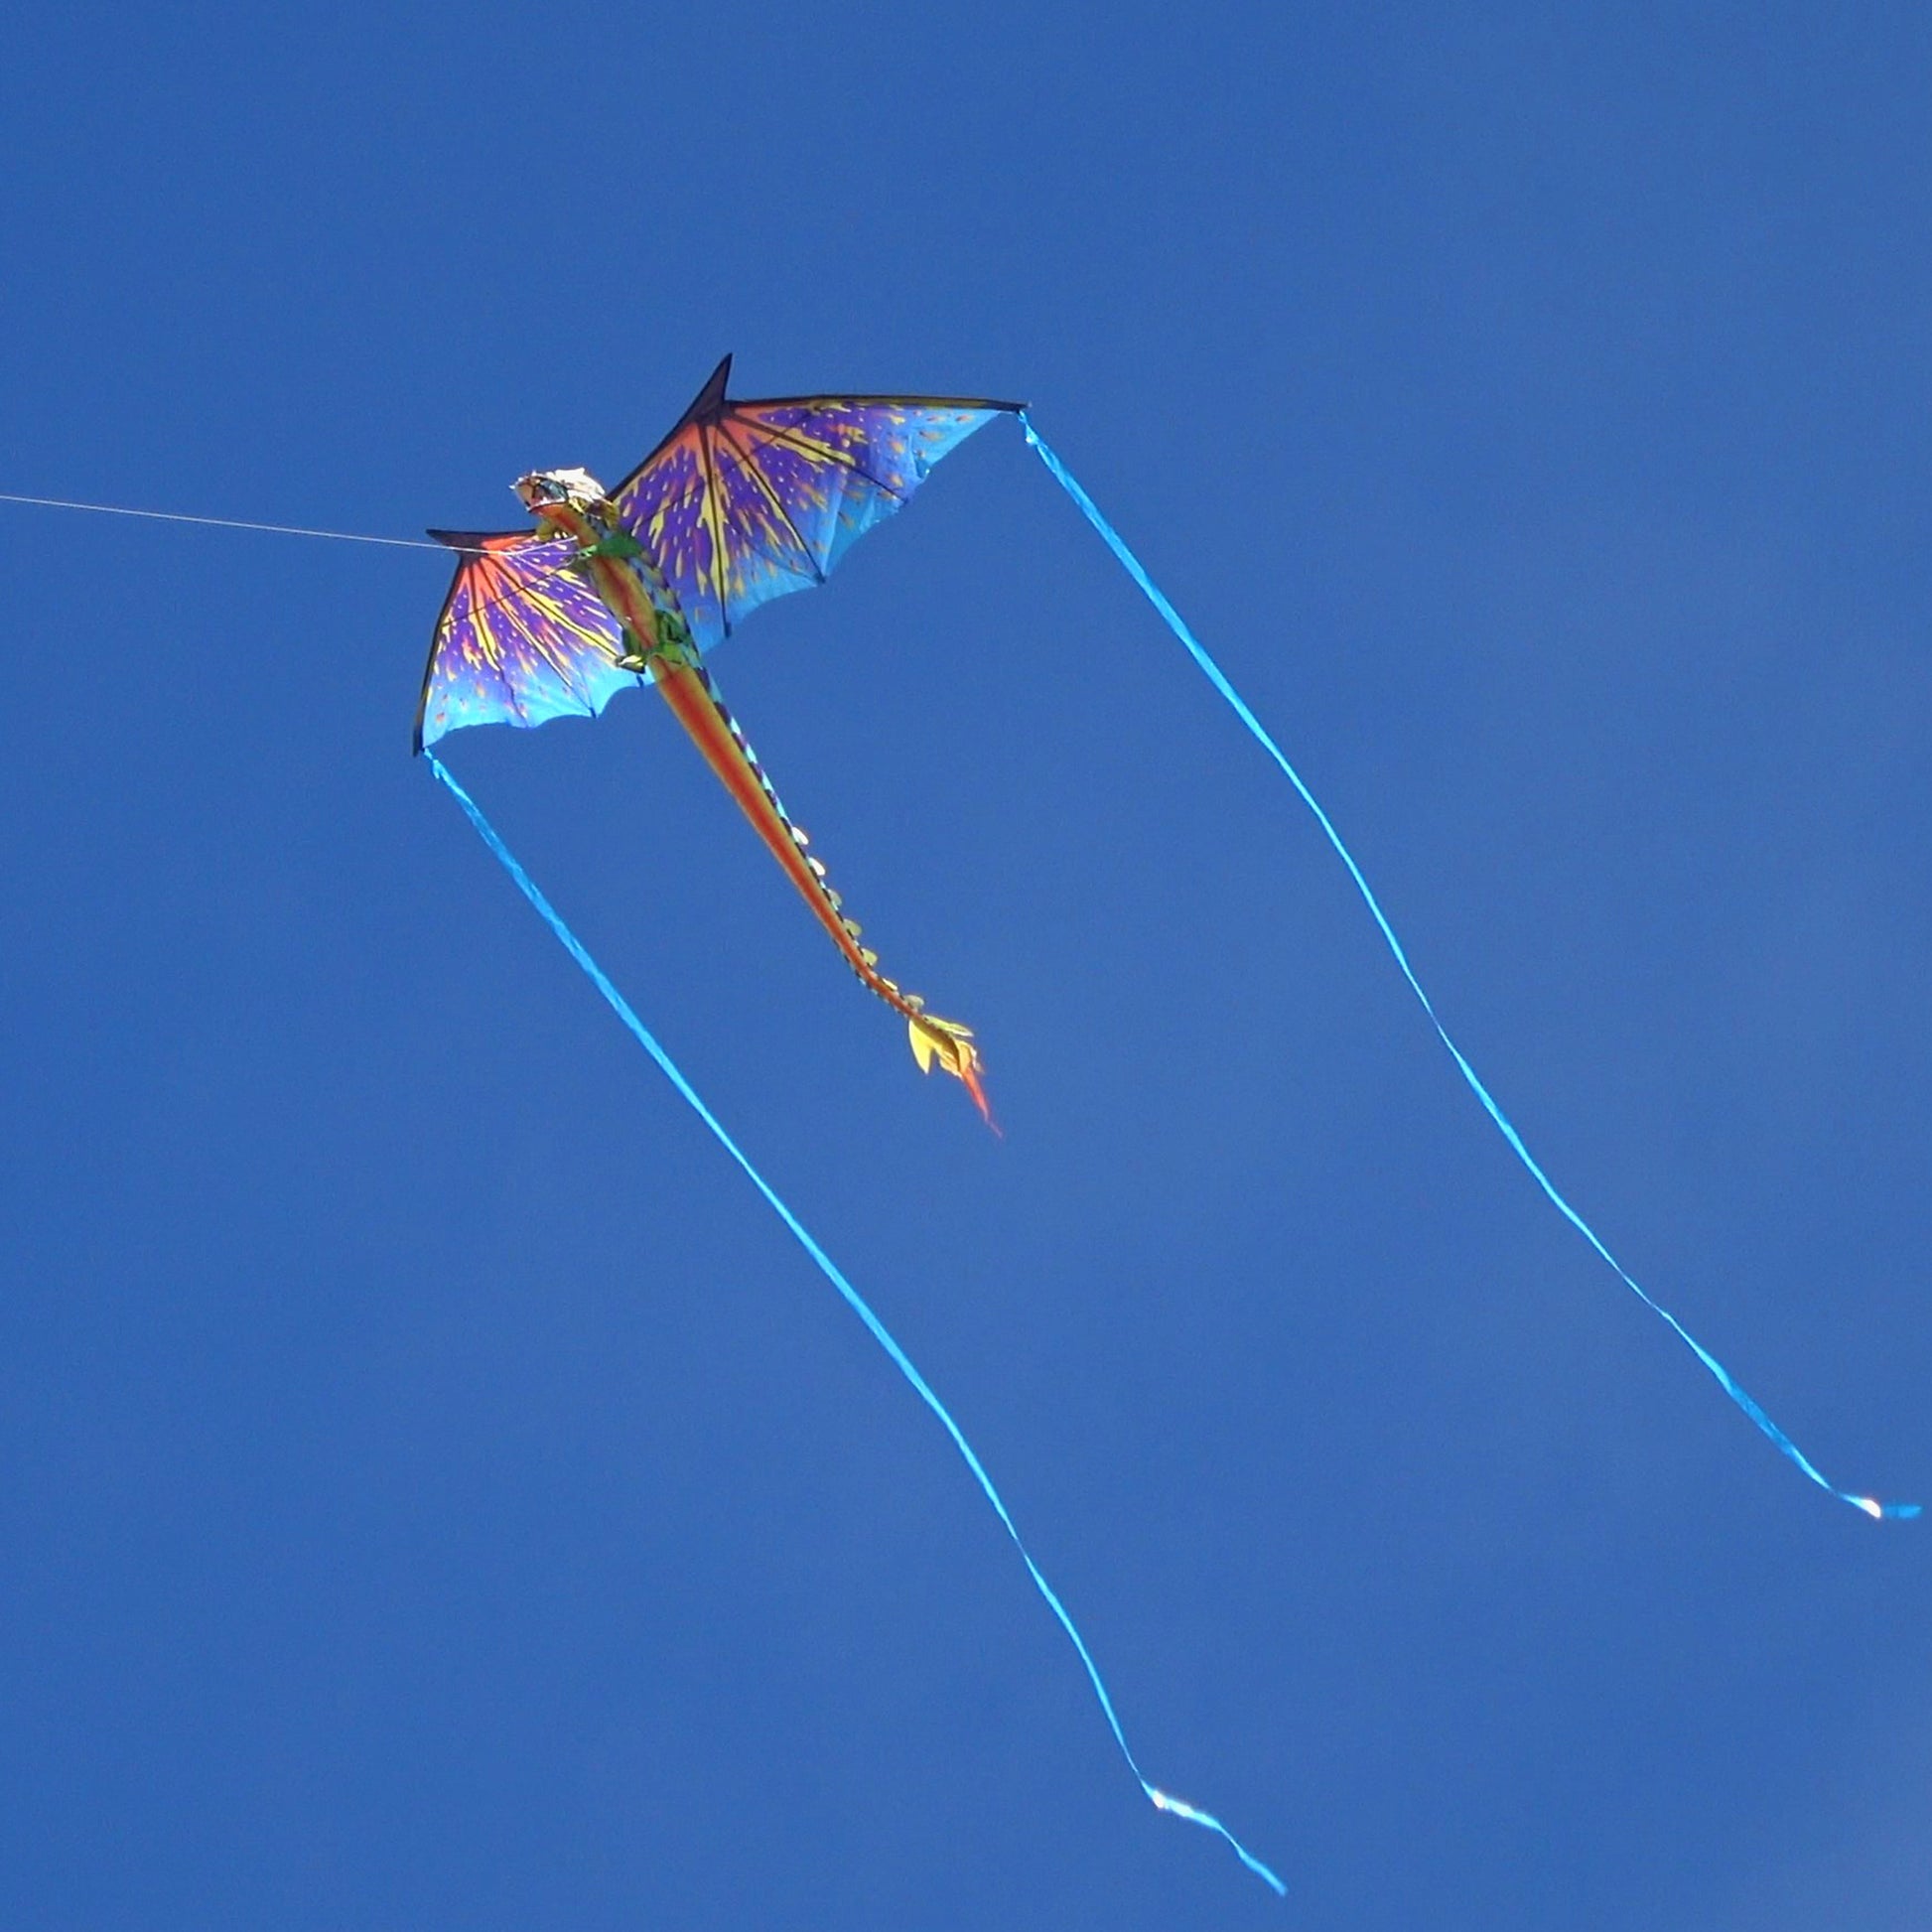 windnsun supersize 3d blue dragon nylon kite flying